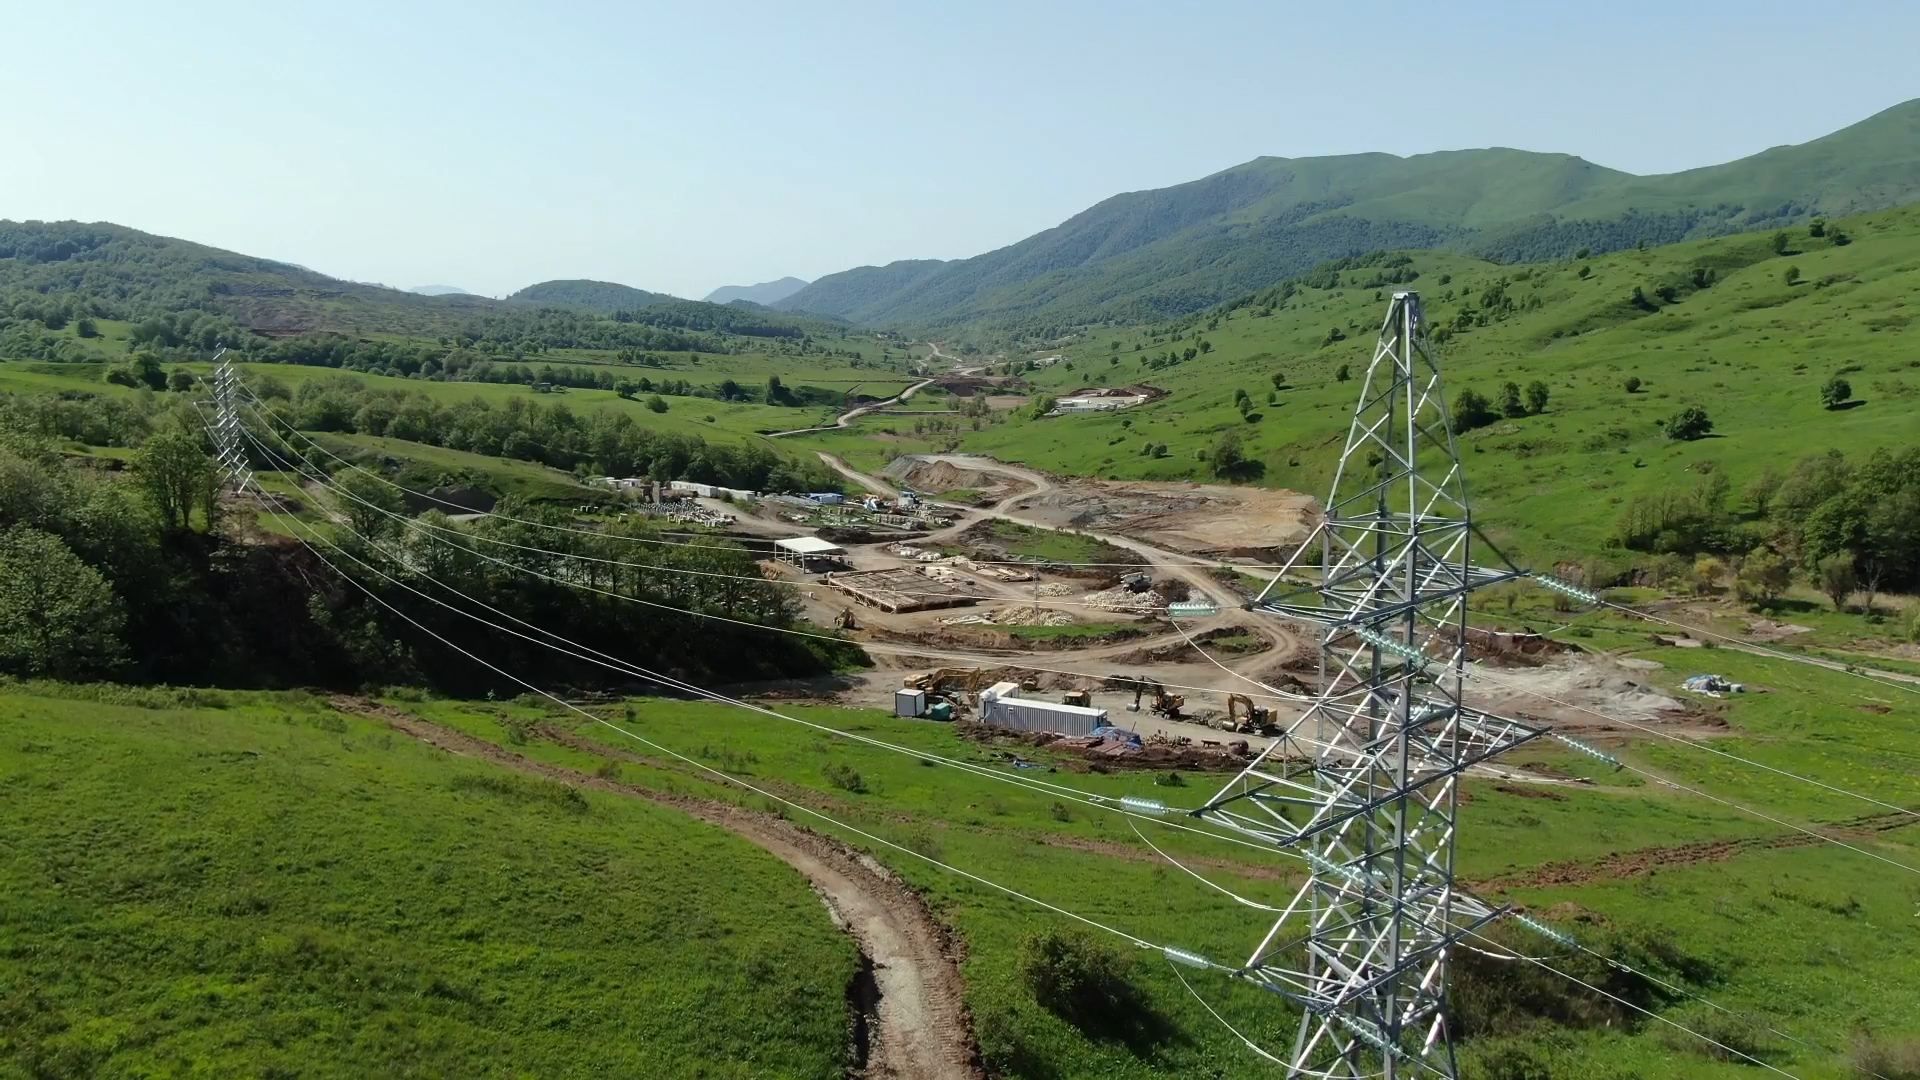 Works on power line between Kalbajar and Lachin regions underway [PHOTO/VIDEO]